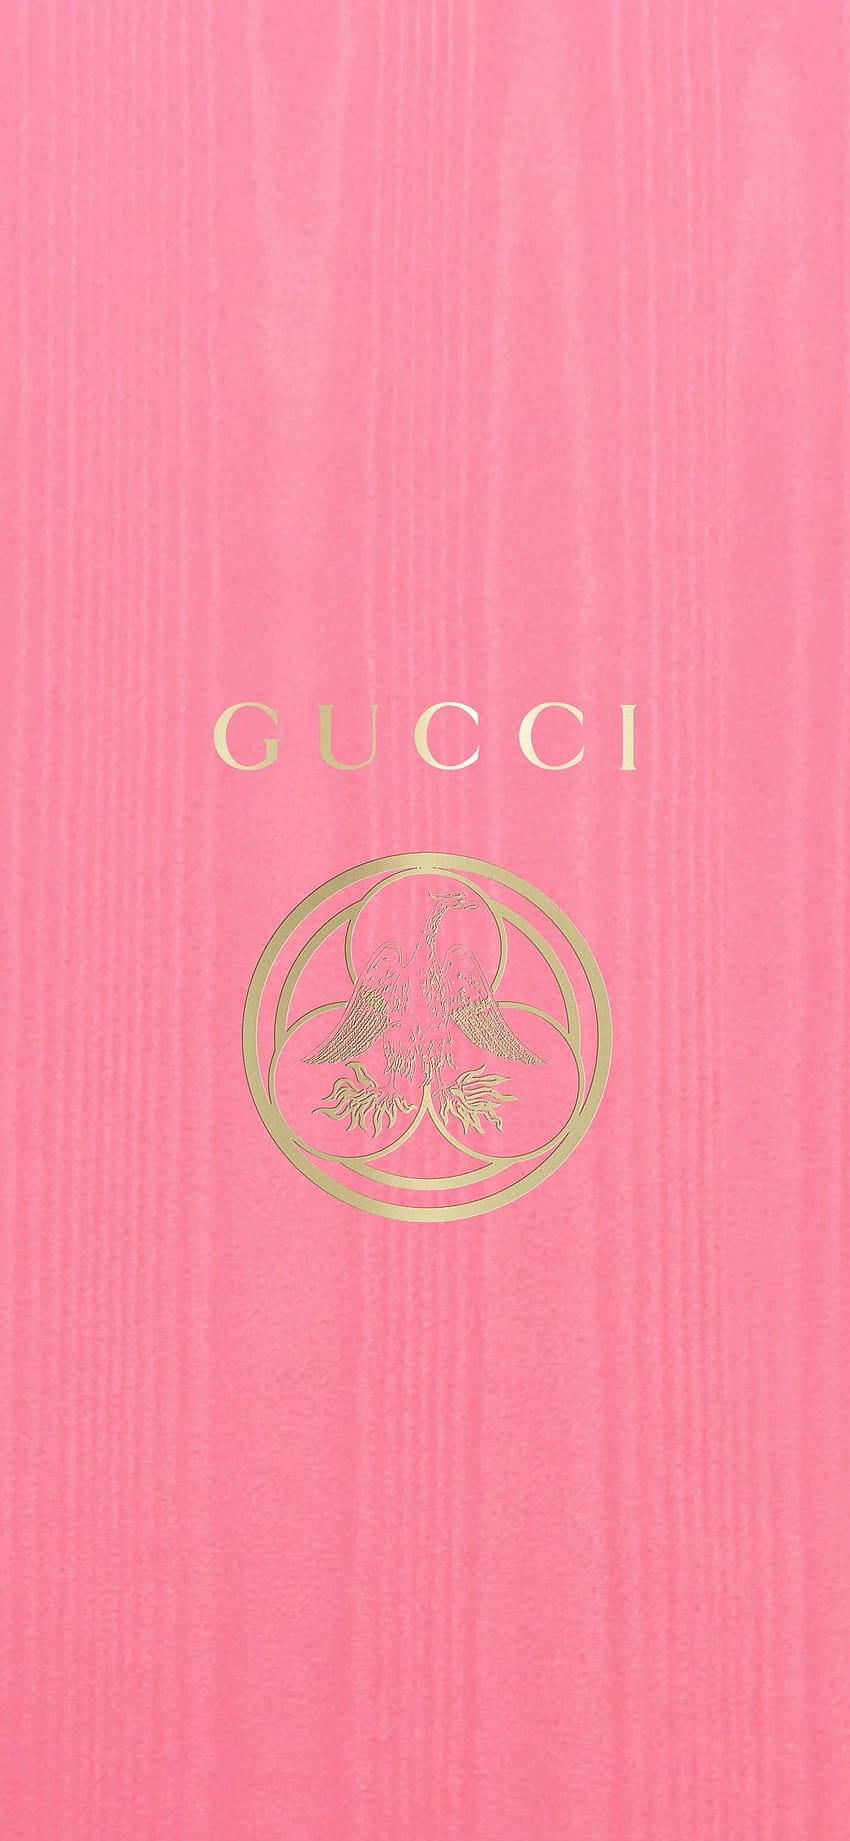 Esti 55 on Gucci, gucci kids HD phone wallpaper | Pxfuel